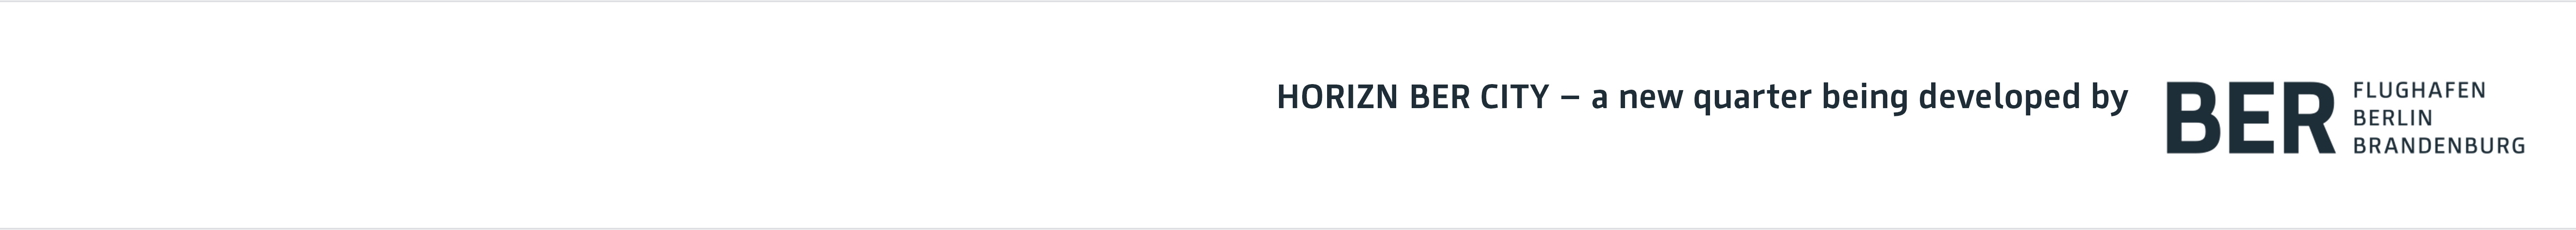 Schriftzug "HORIZN ist eine Quartiersentwicklung des BER Flughafen Berlin Brandenburg"